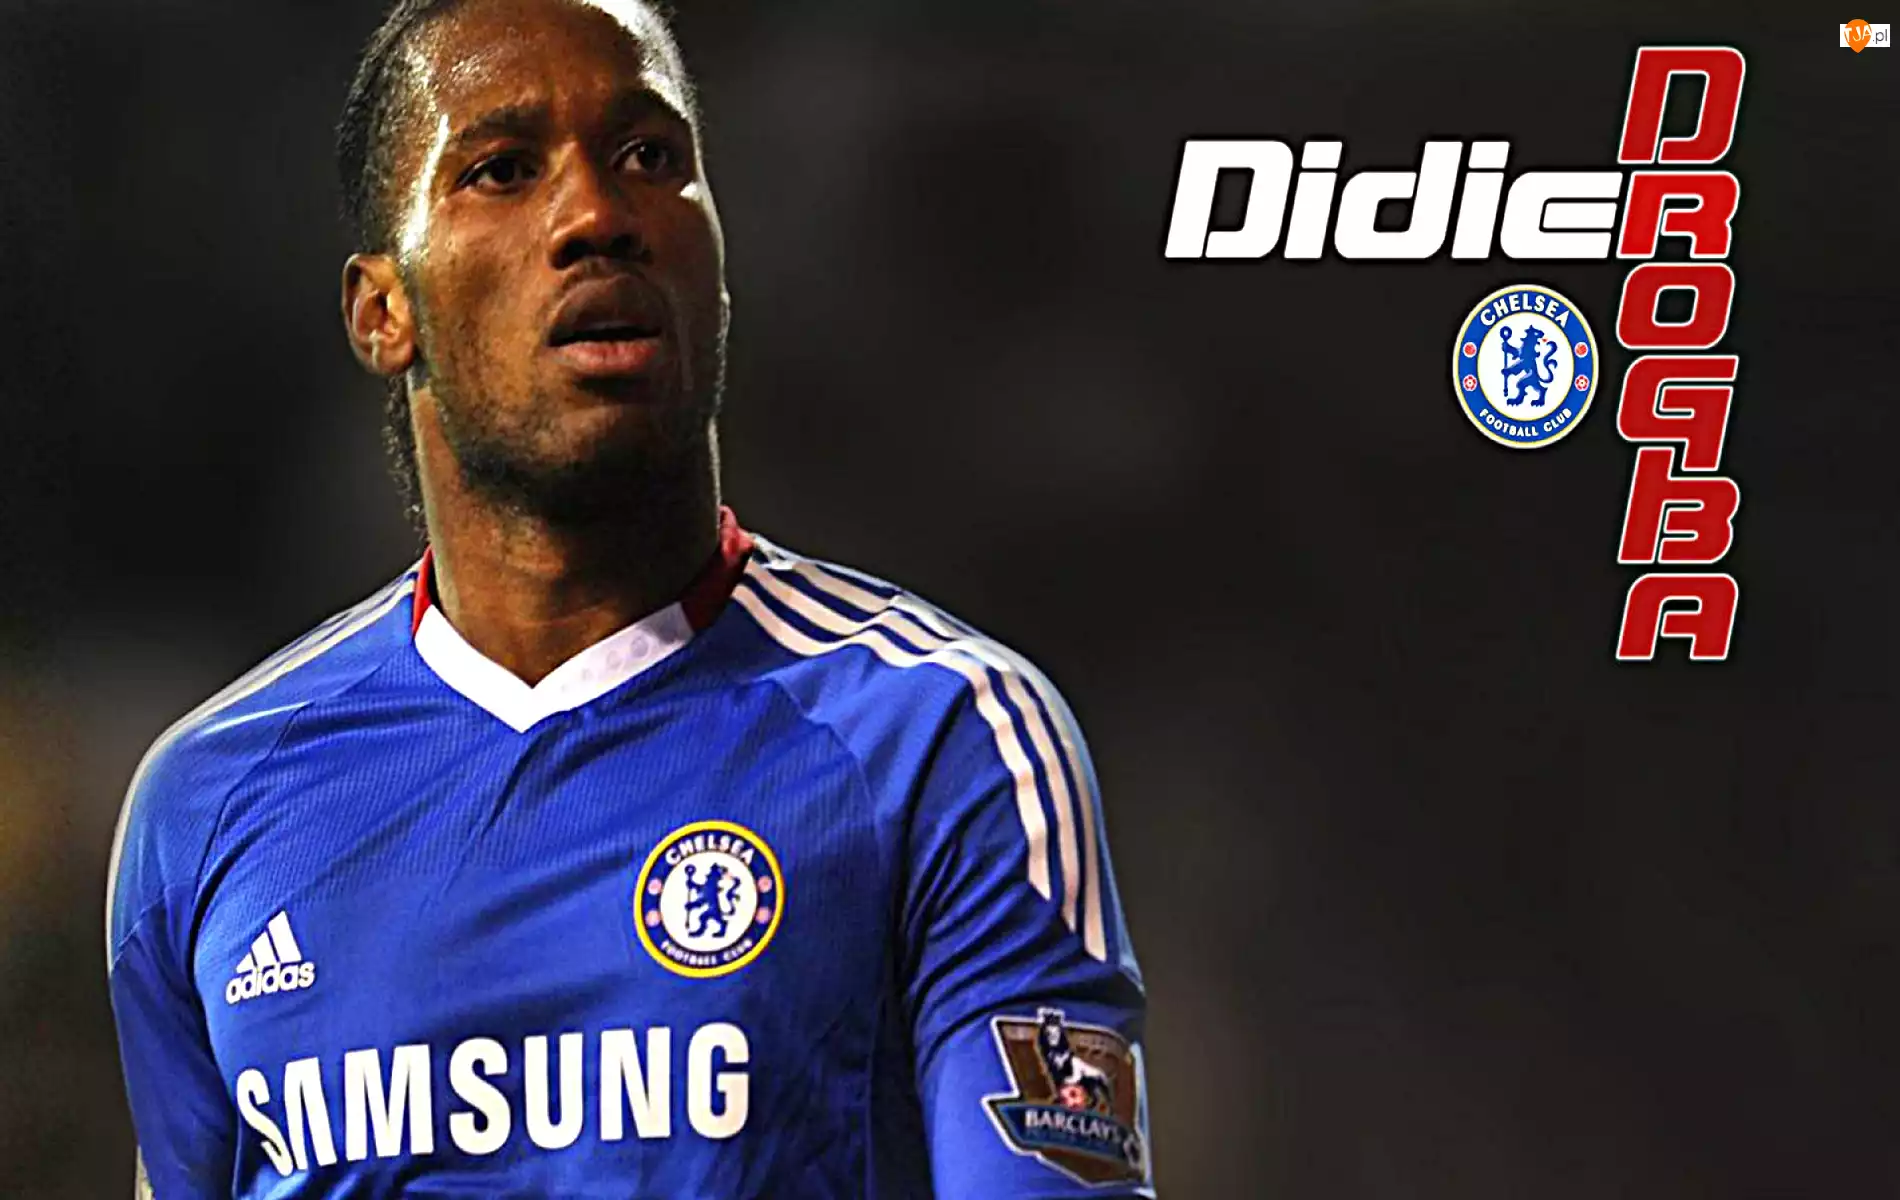 Chelsea Londyn, Didier Drogba, sportowiec, piłkarz, mężczyzna